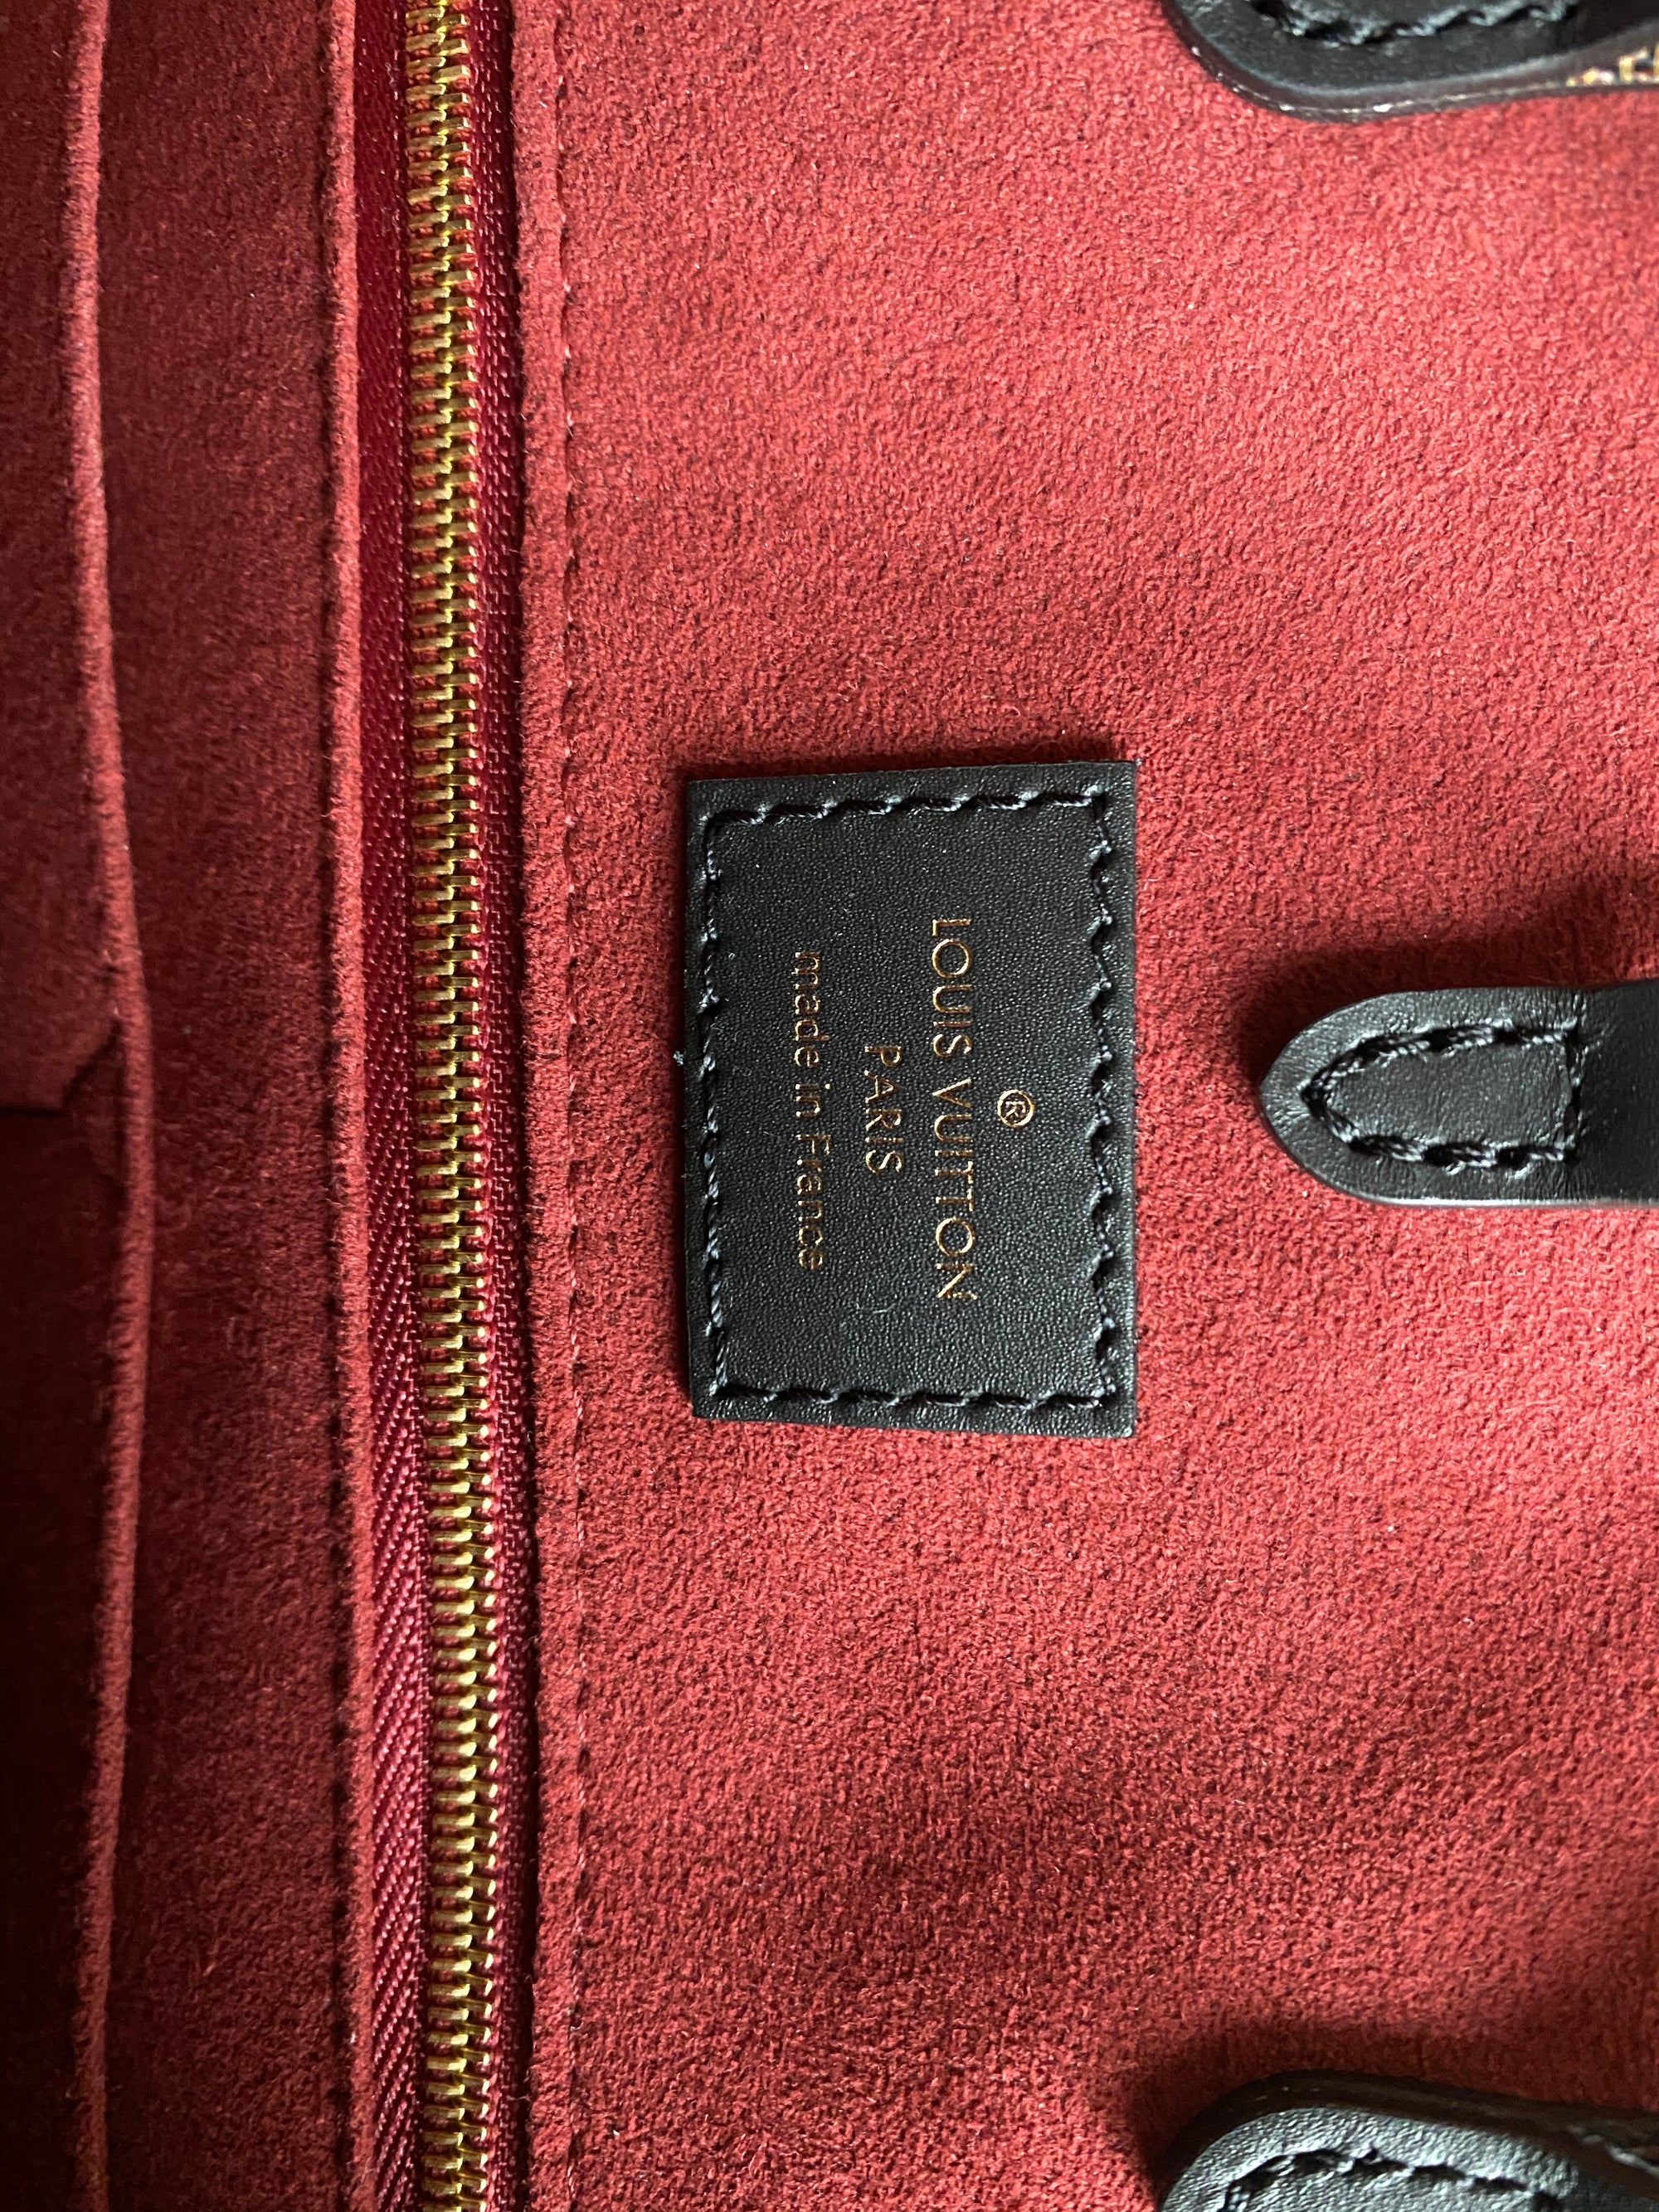 Louis Vuitton OnTheGo Size mm Noir/Beige M45495 Monogram Empreinte Leather